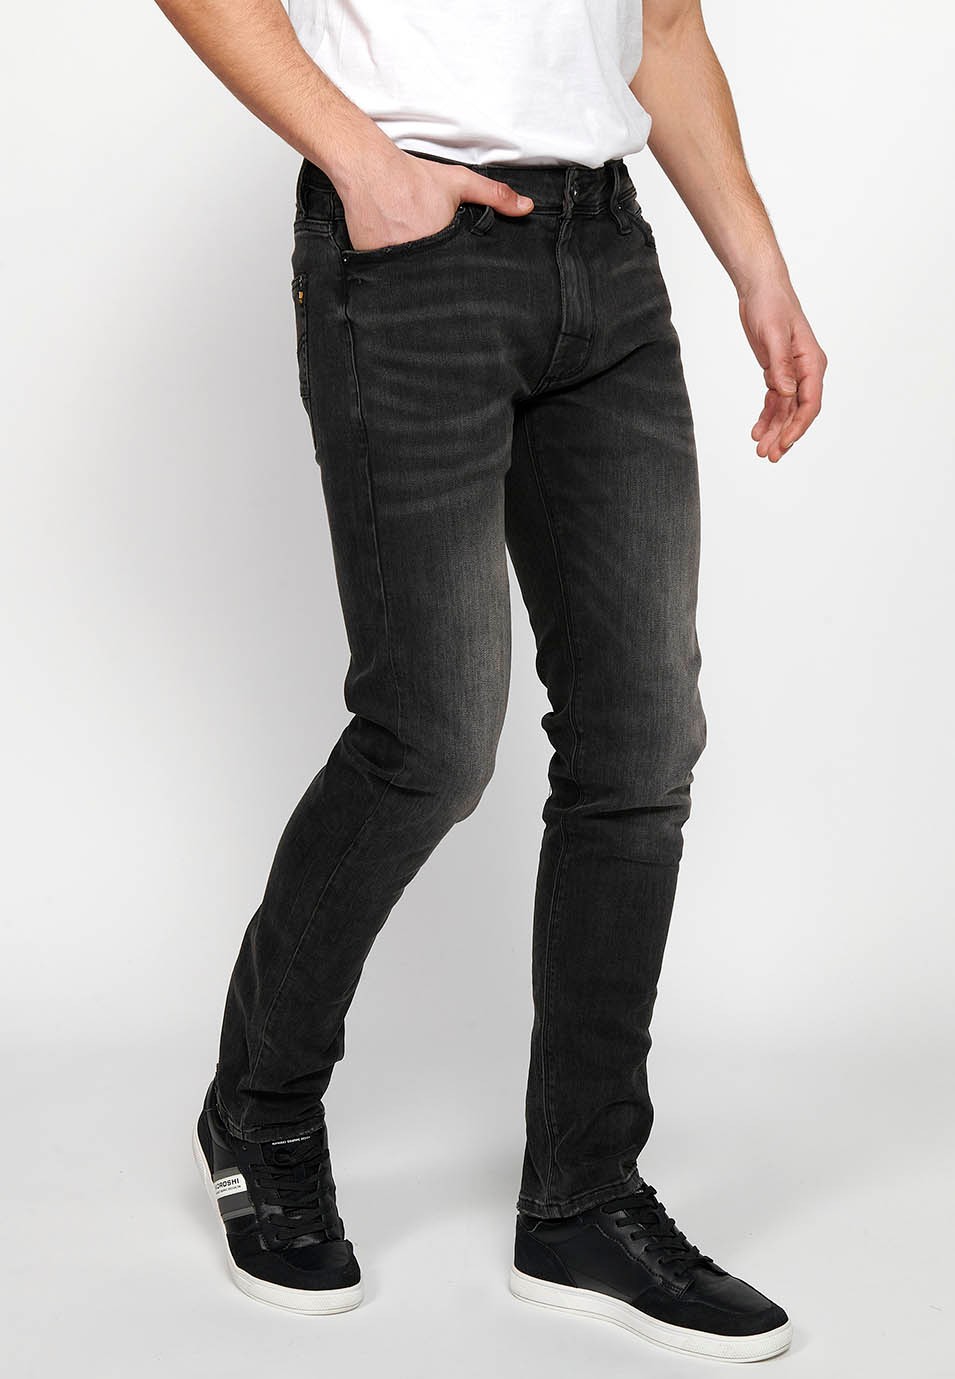 Pantalons texans llarg straigth regular fit amb Tancament davanter amb cremallera i botó de Color Denim Negre per a Home 1